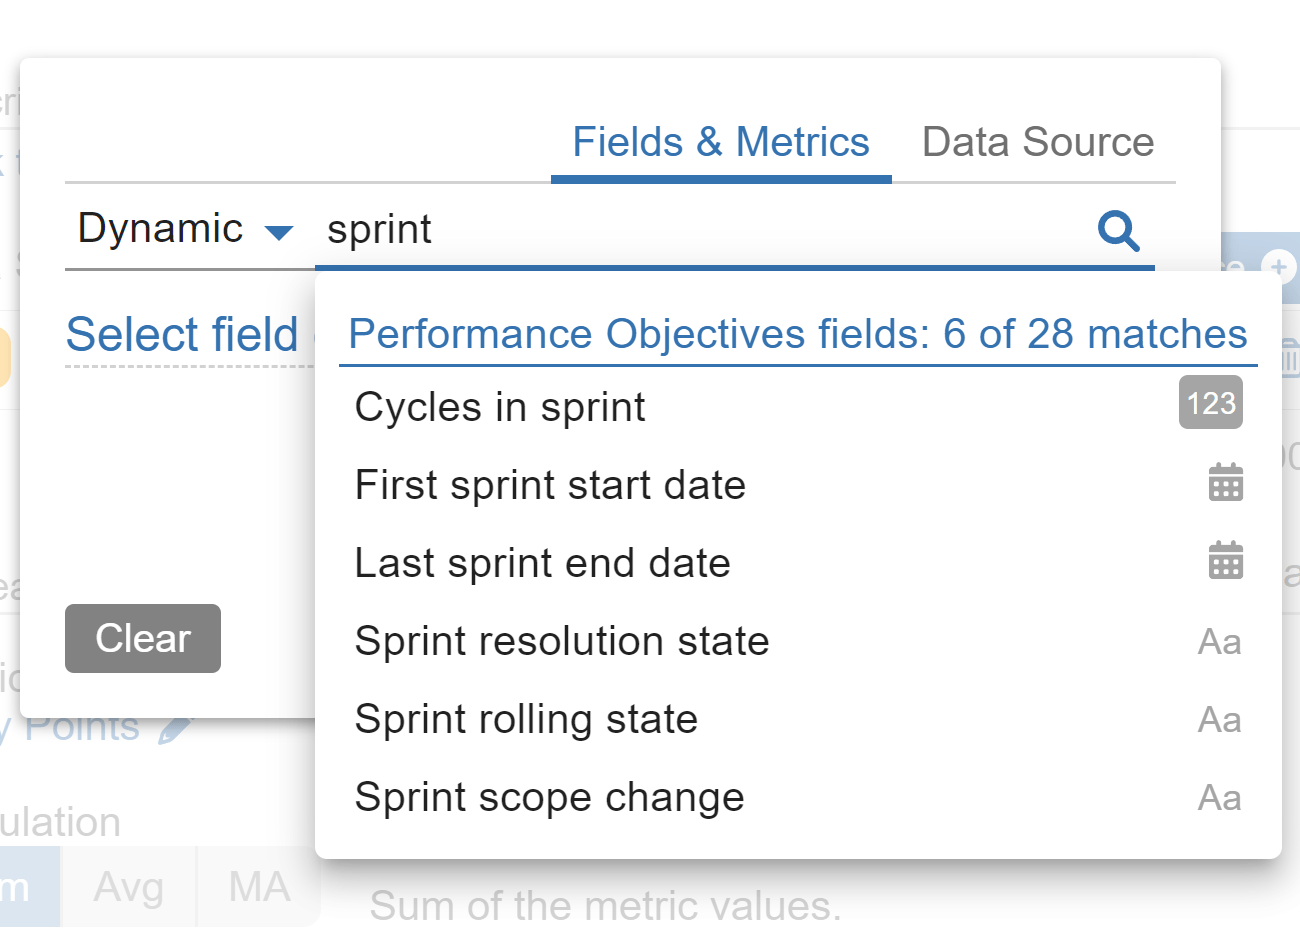 Dynamic Sprint fields POFJ